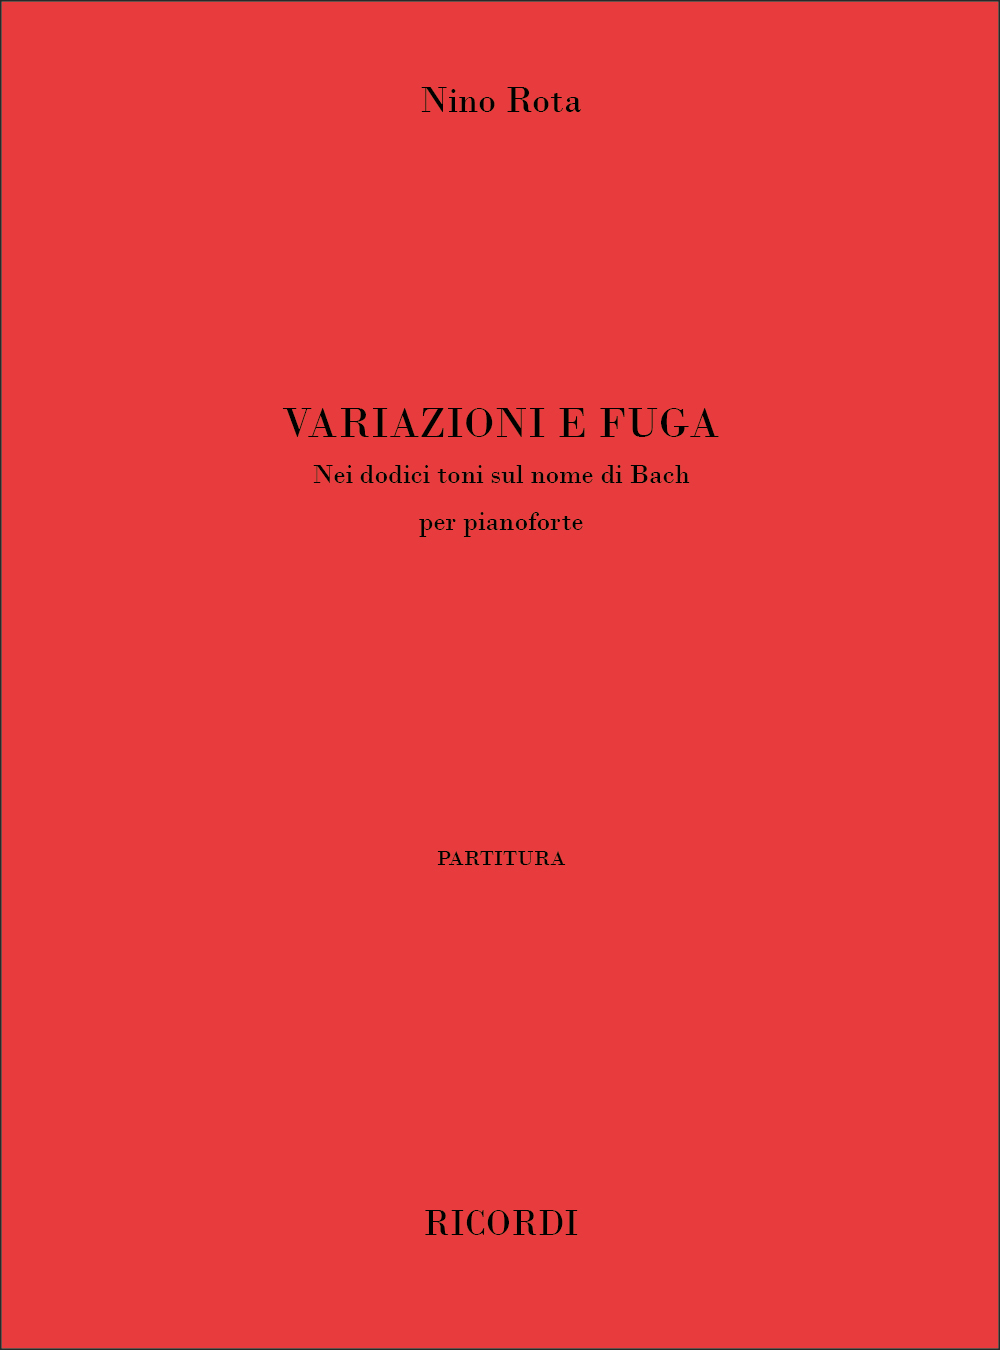 Nino Rota: Variazioni e fuga nei dodici toni sul nome di Bach: Piano